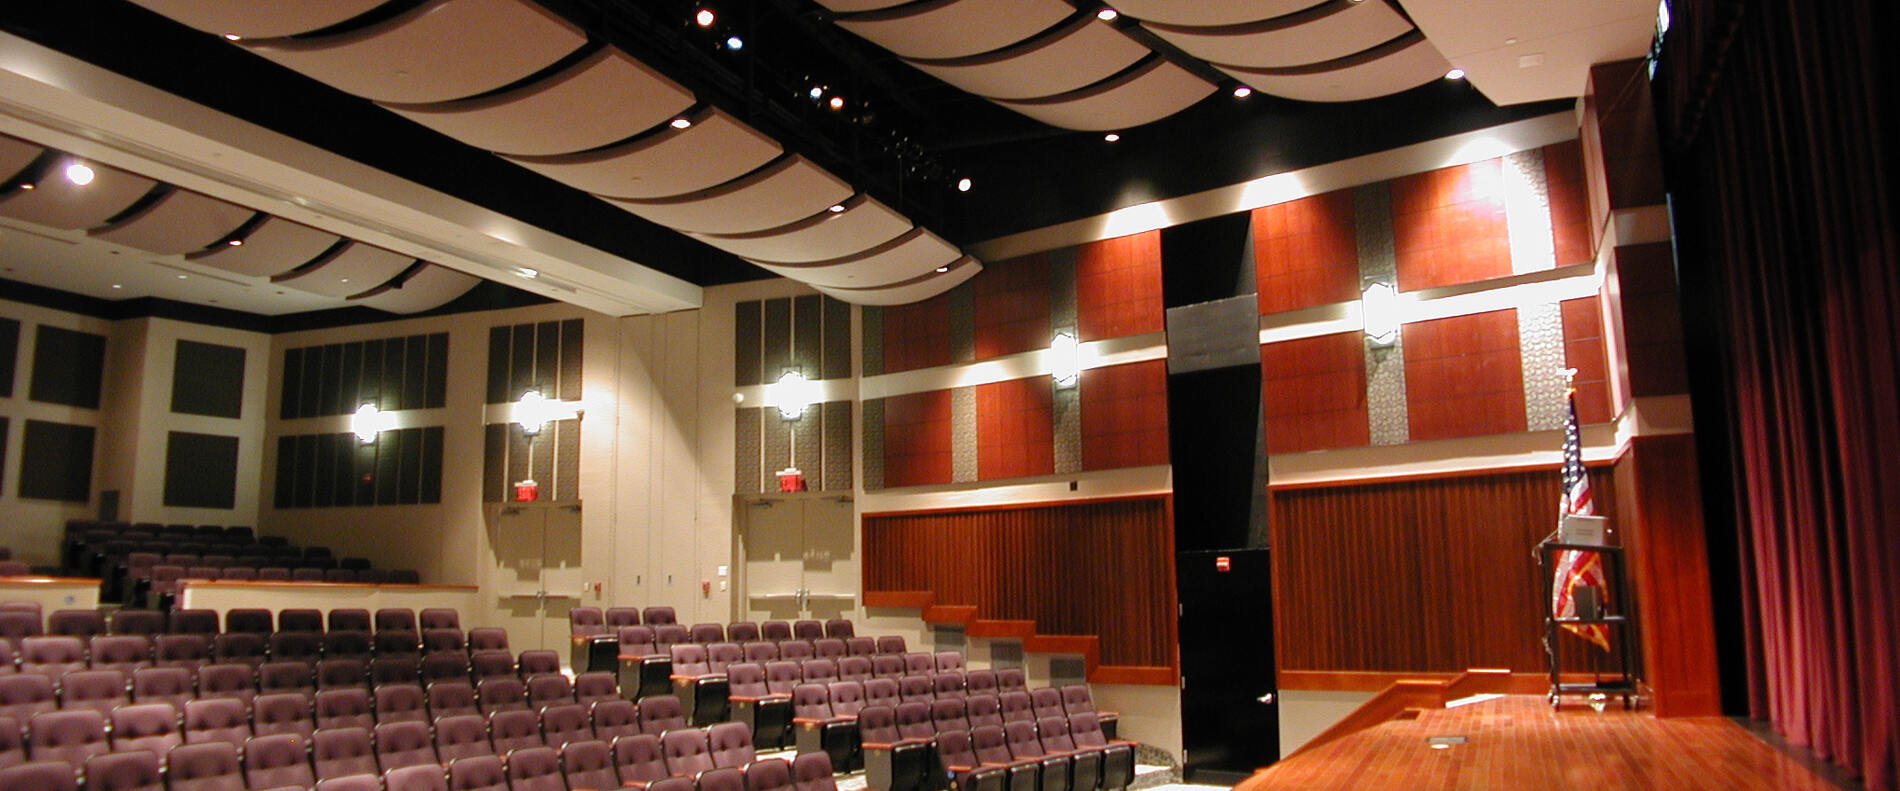 Image of auditorium